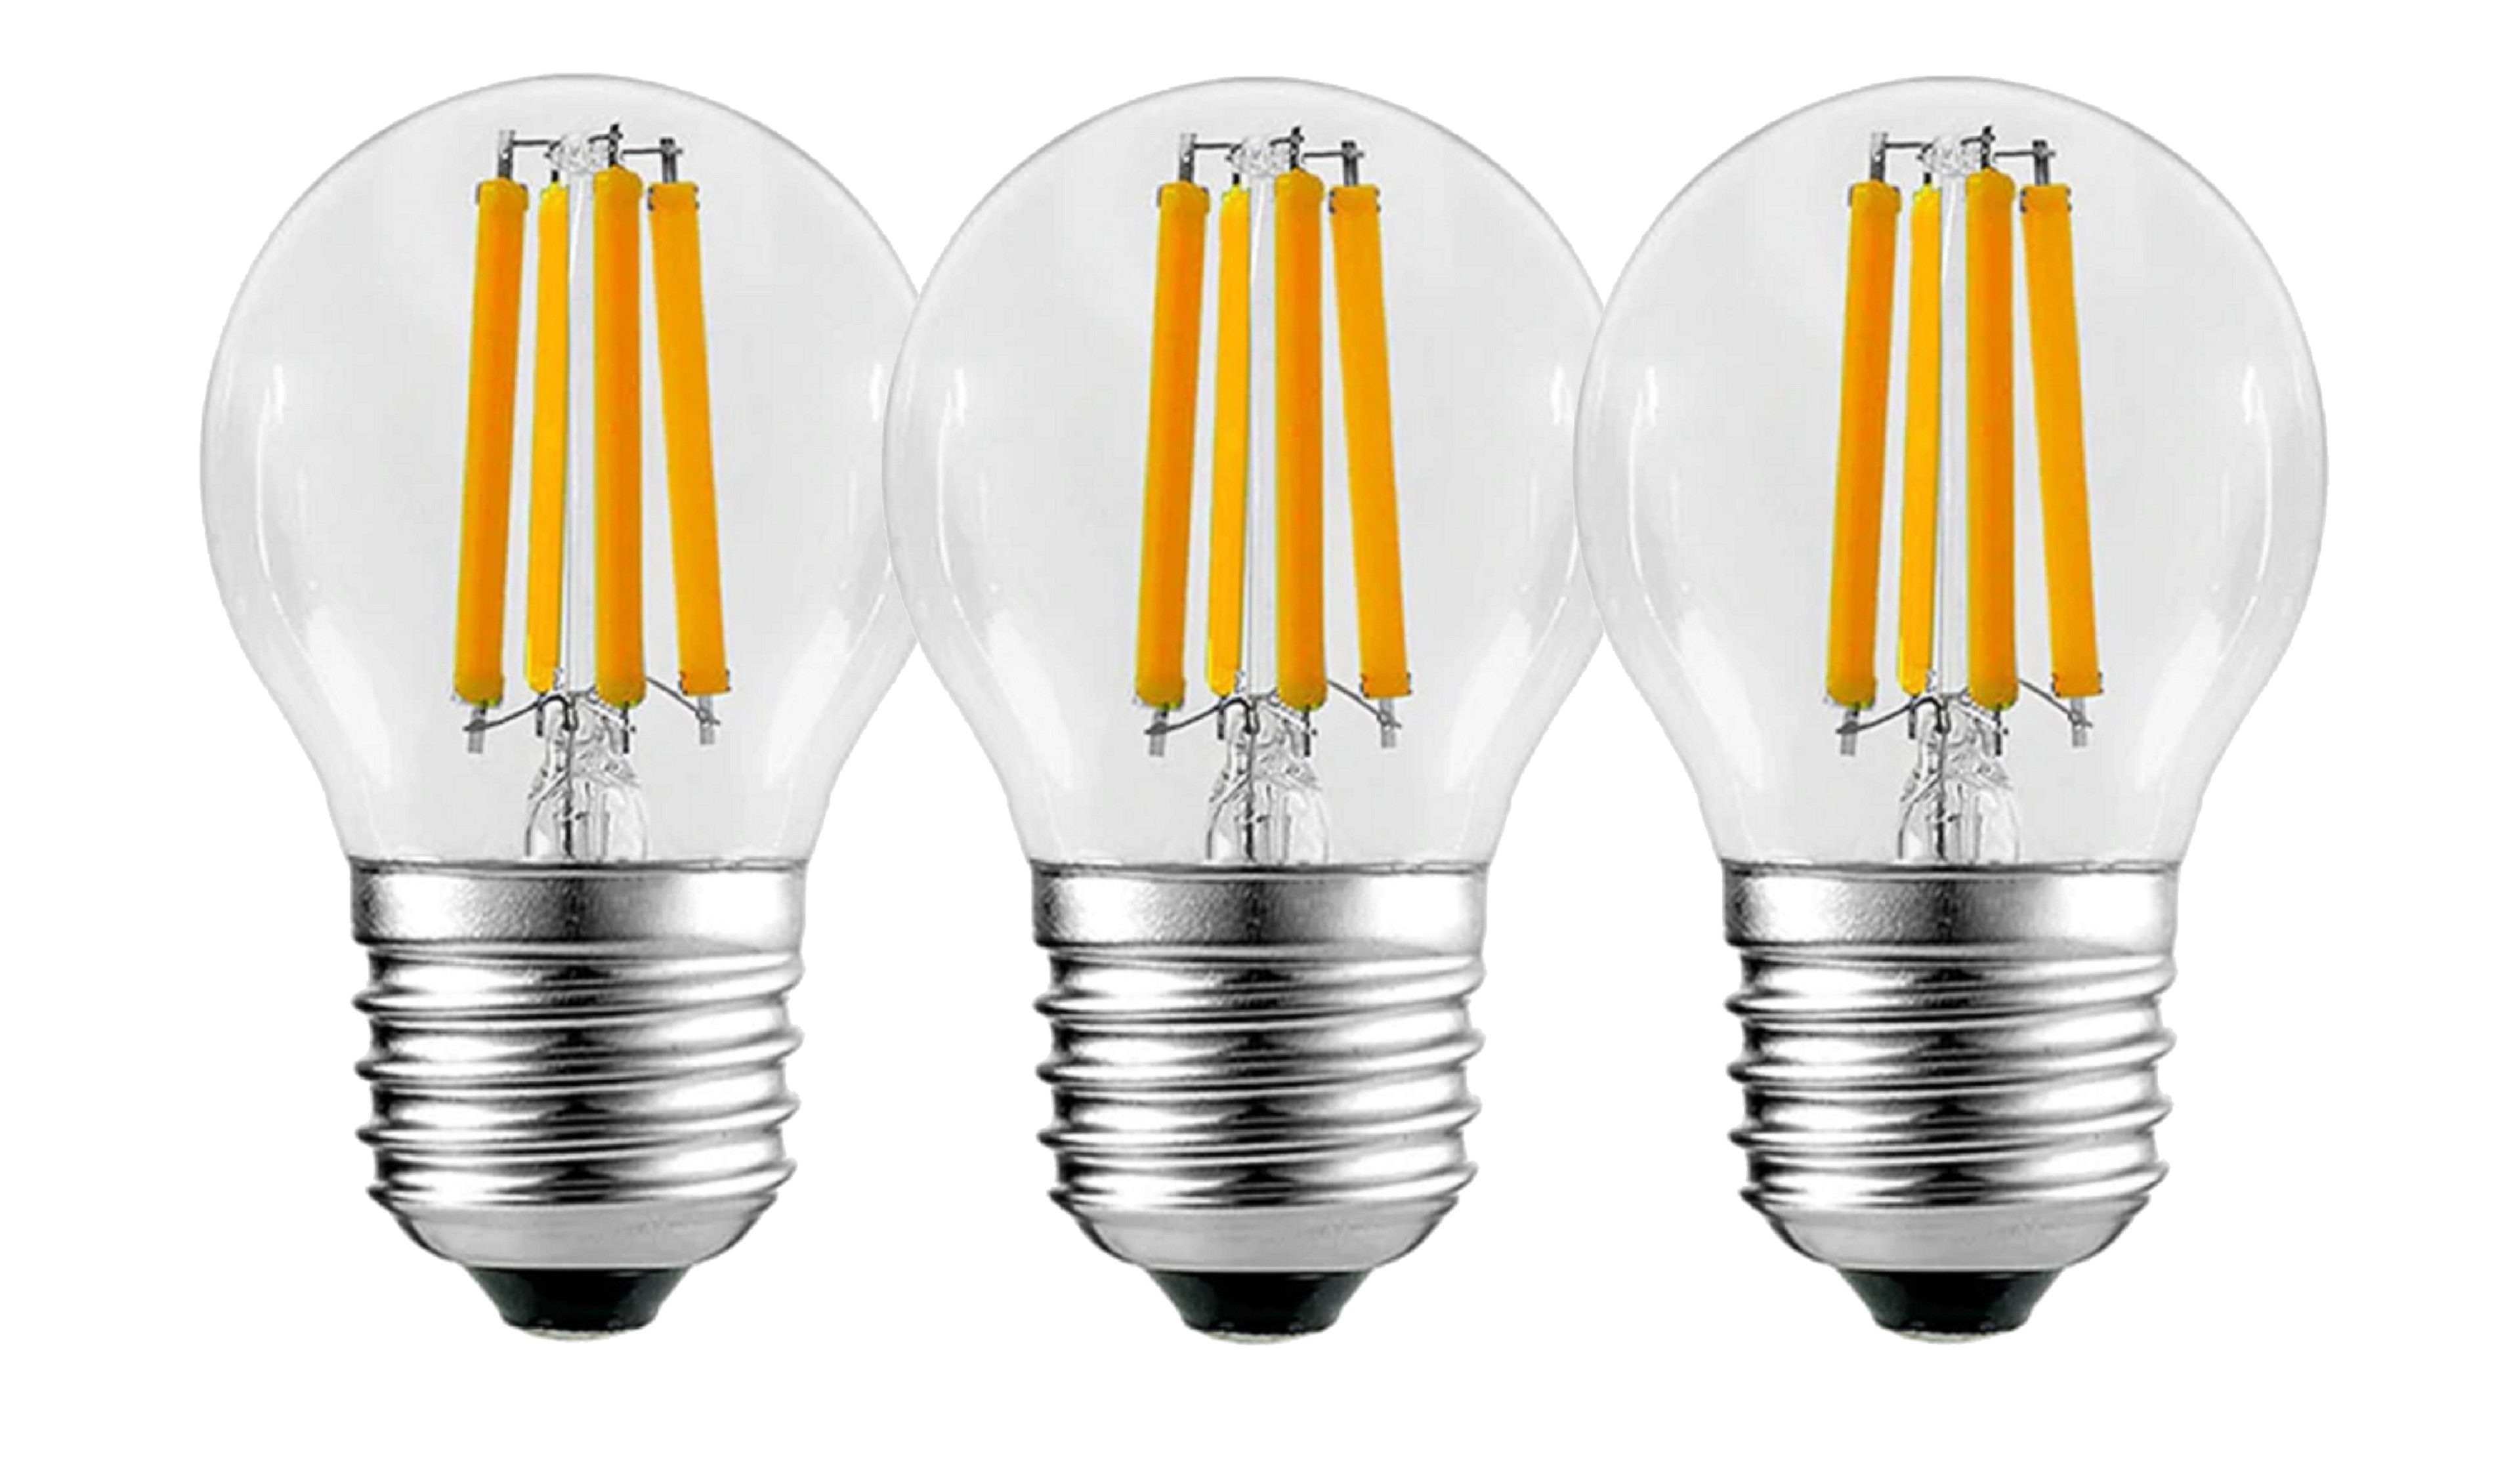 TRANGO LED-Leuchtmittel E27002, 3er Pack E27002-3 LED Filament Birne 5 Watt 450 Lumen - 2700K warmweiß leuchtend Ersatz für 60W Glühlampe - Glühbirne - Lampe Birne in Tropfen Form mit E27 Fassung Abstrahlwinkel 360°, 3 St., Lampe